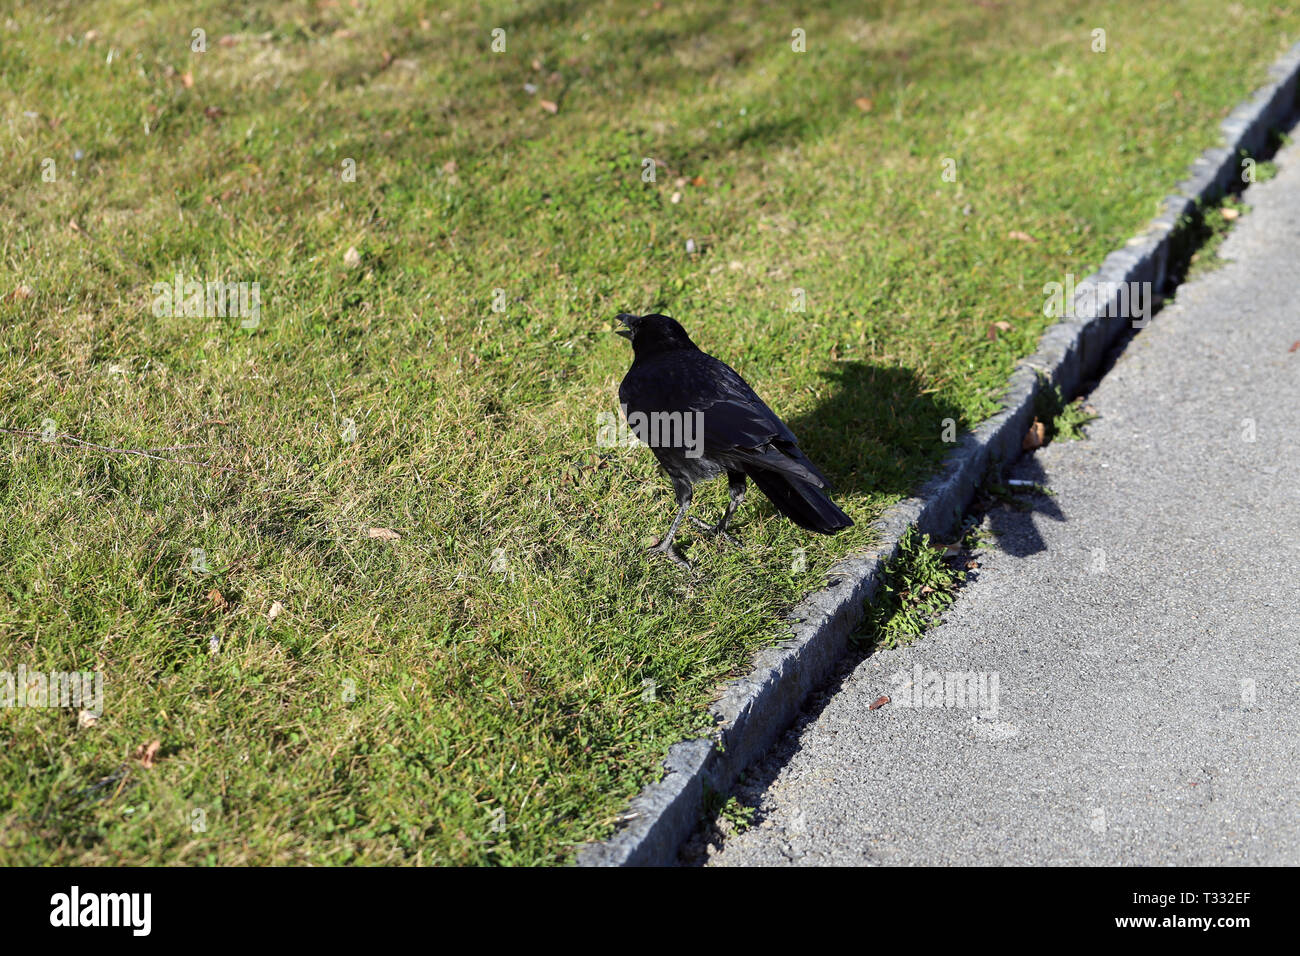 Black Raven Vogel gehen auf eine Wiese in Nyon, Schweiz. Auf dem Foto sehen  Sie den Vogel, sein Schatten, Gras und ein Laufsteg aus Asphalt  Stockfotografie - Alamy